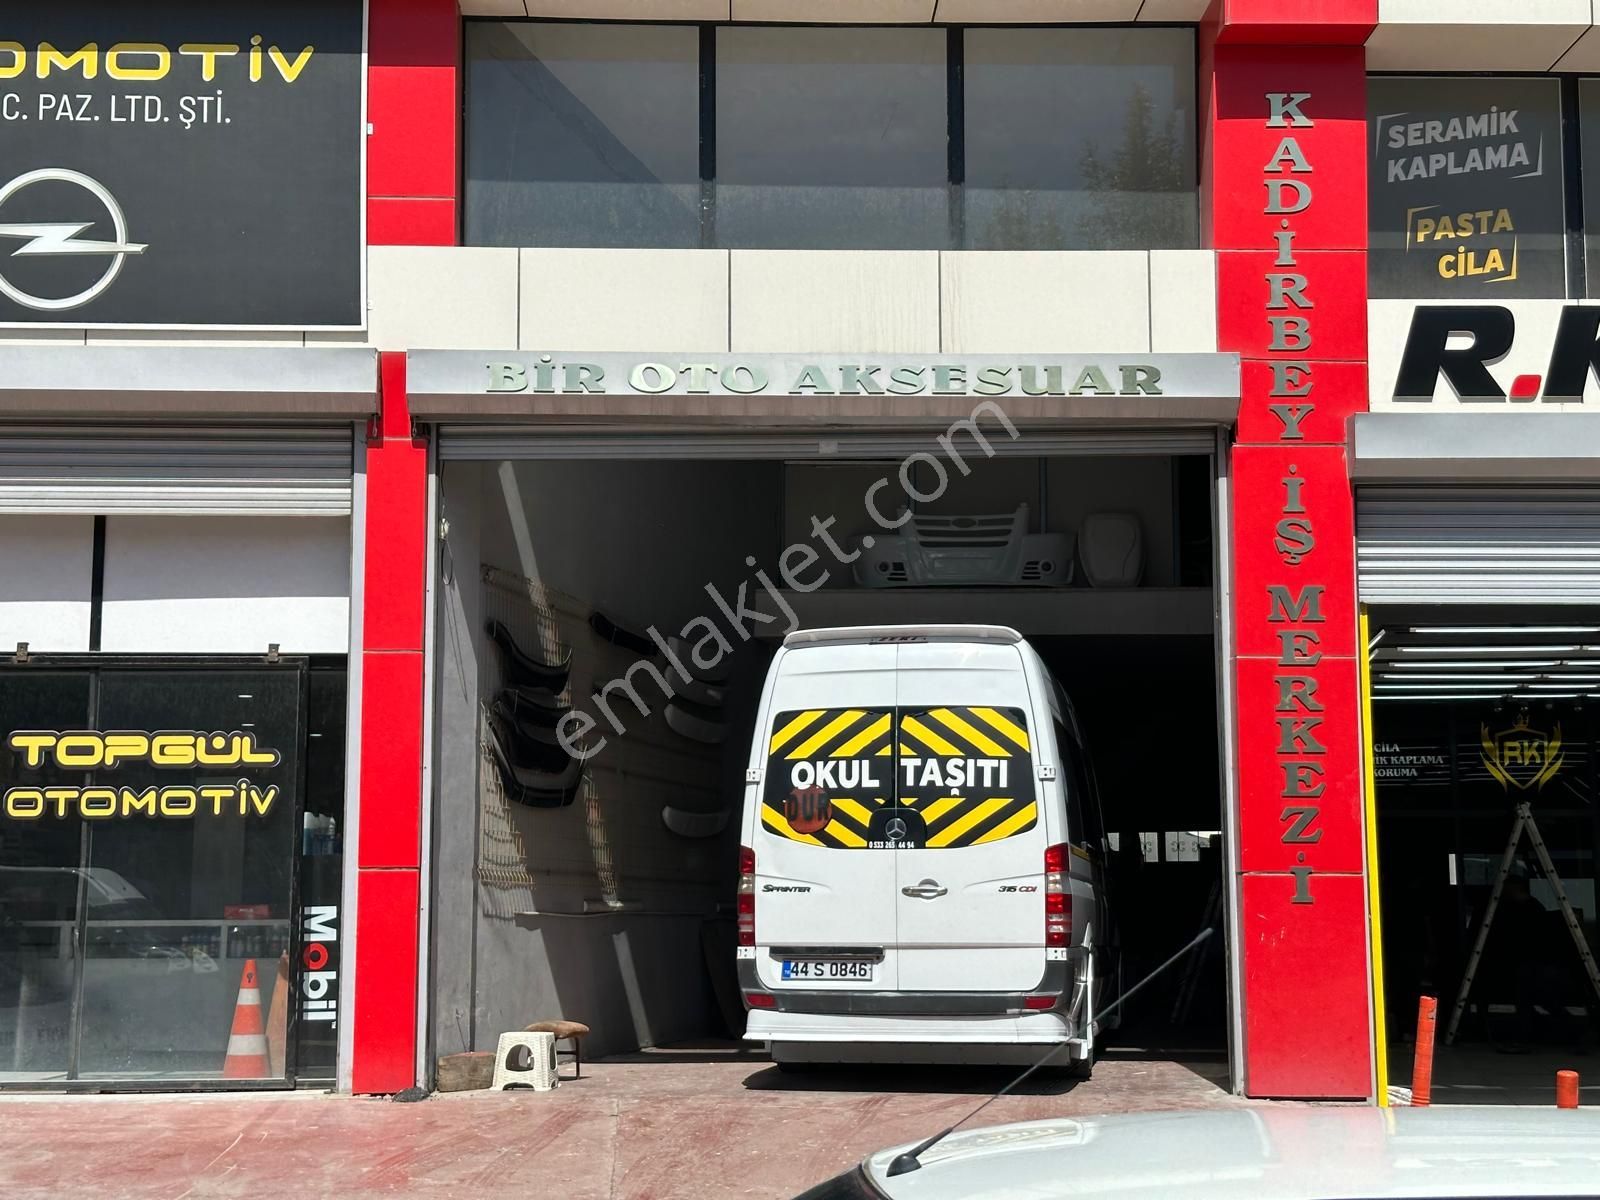 Yeşilyurt Çavuşoğlu Satılık Dükkan & Mağaza  CB SAFİR'den ESKİ SANAYİ BÖLGESİ'nde 90 m2 SATILIK İŞ YERİ